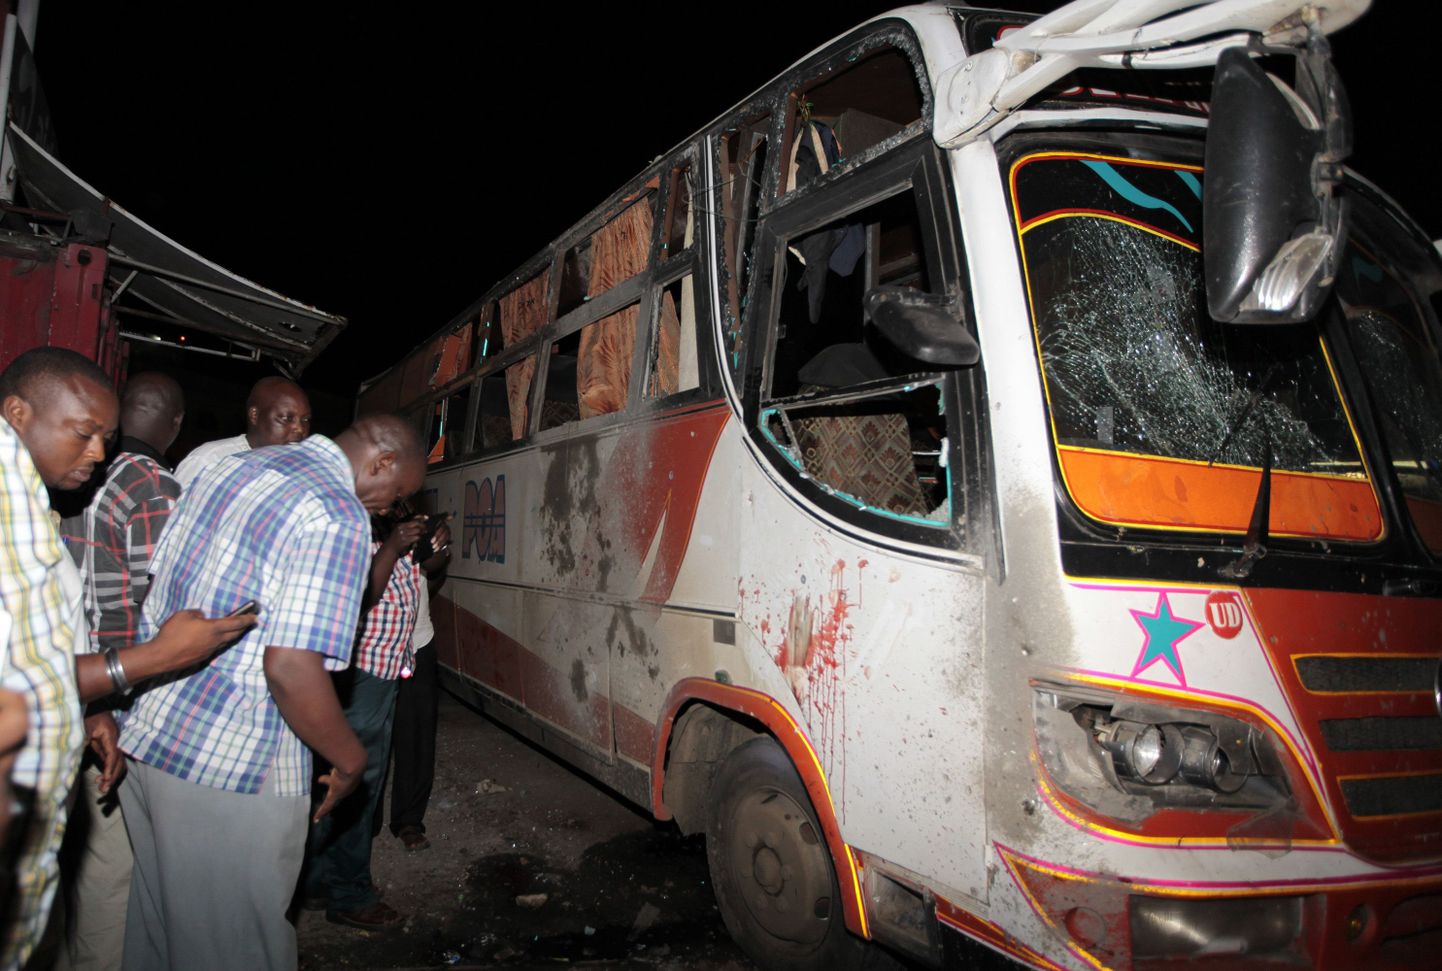 Ühe versiooni kohaselt olid pommid juba varem bussidesse paigaldatud, teise versiooni kohaselt viskasid islamistid bussi käsigranaate.